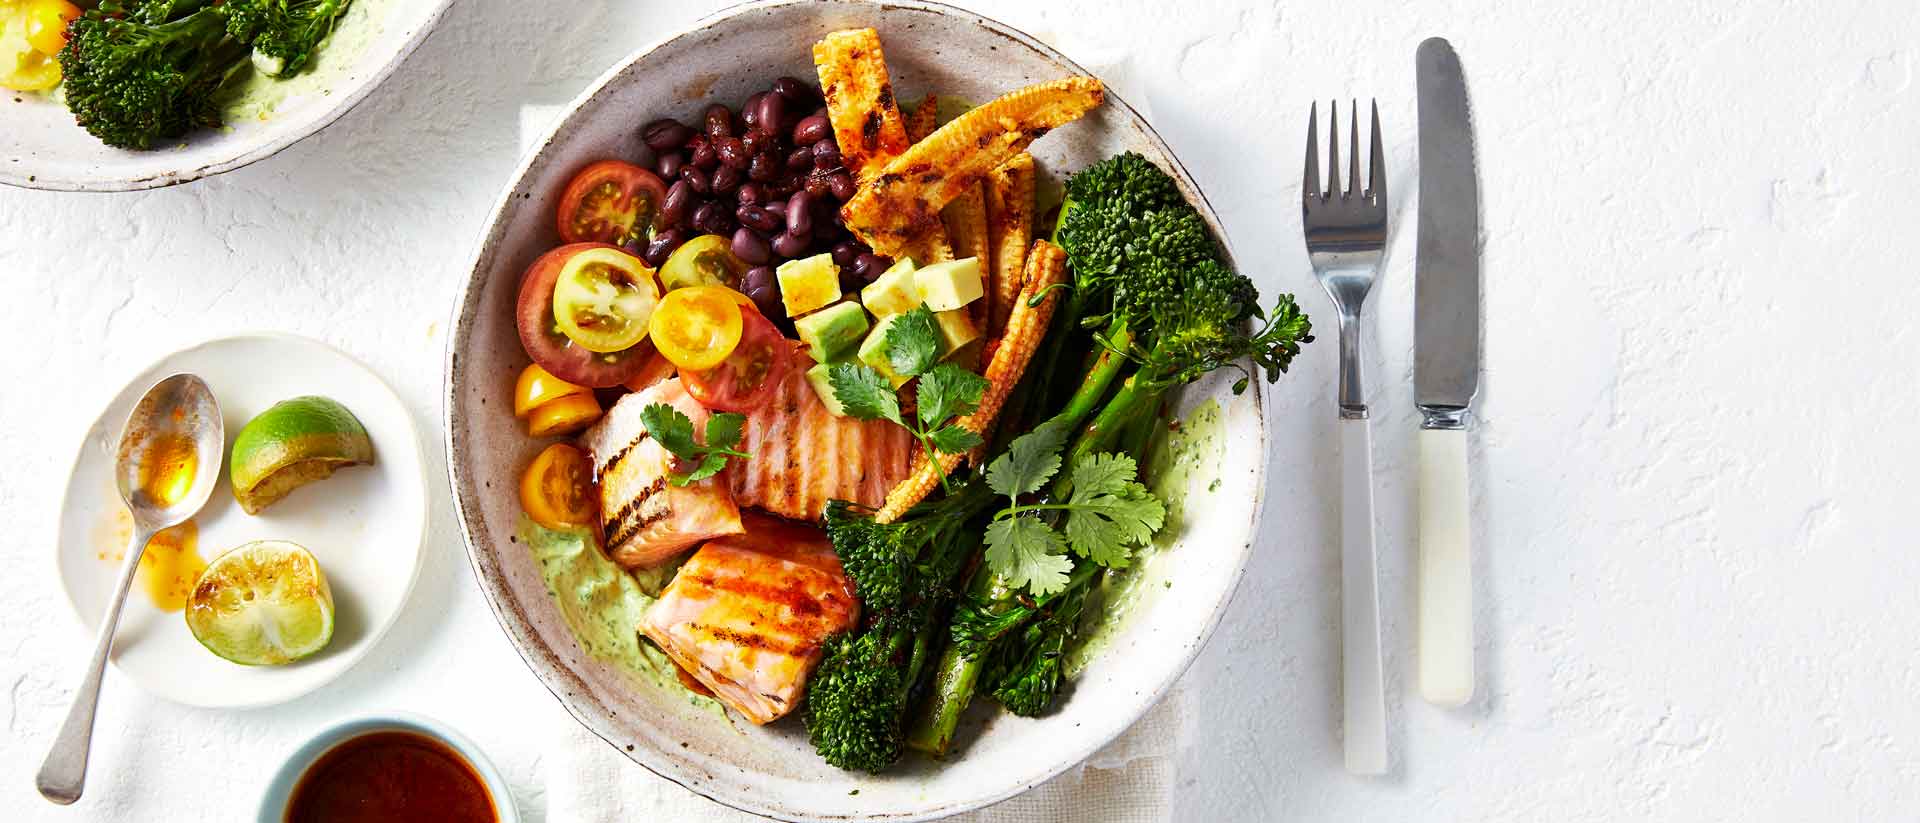 Barbecue Broccolini® with Salmon and Black Bean Salad Recipe